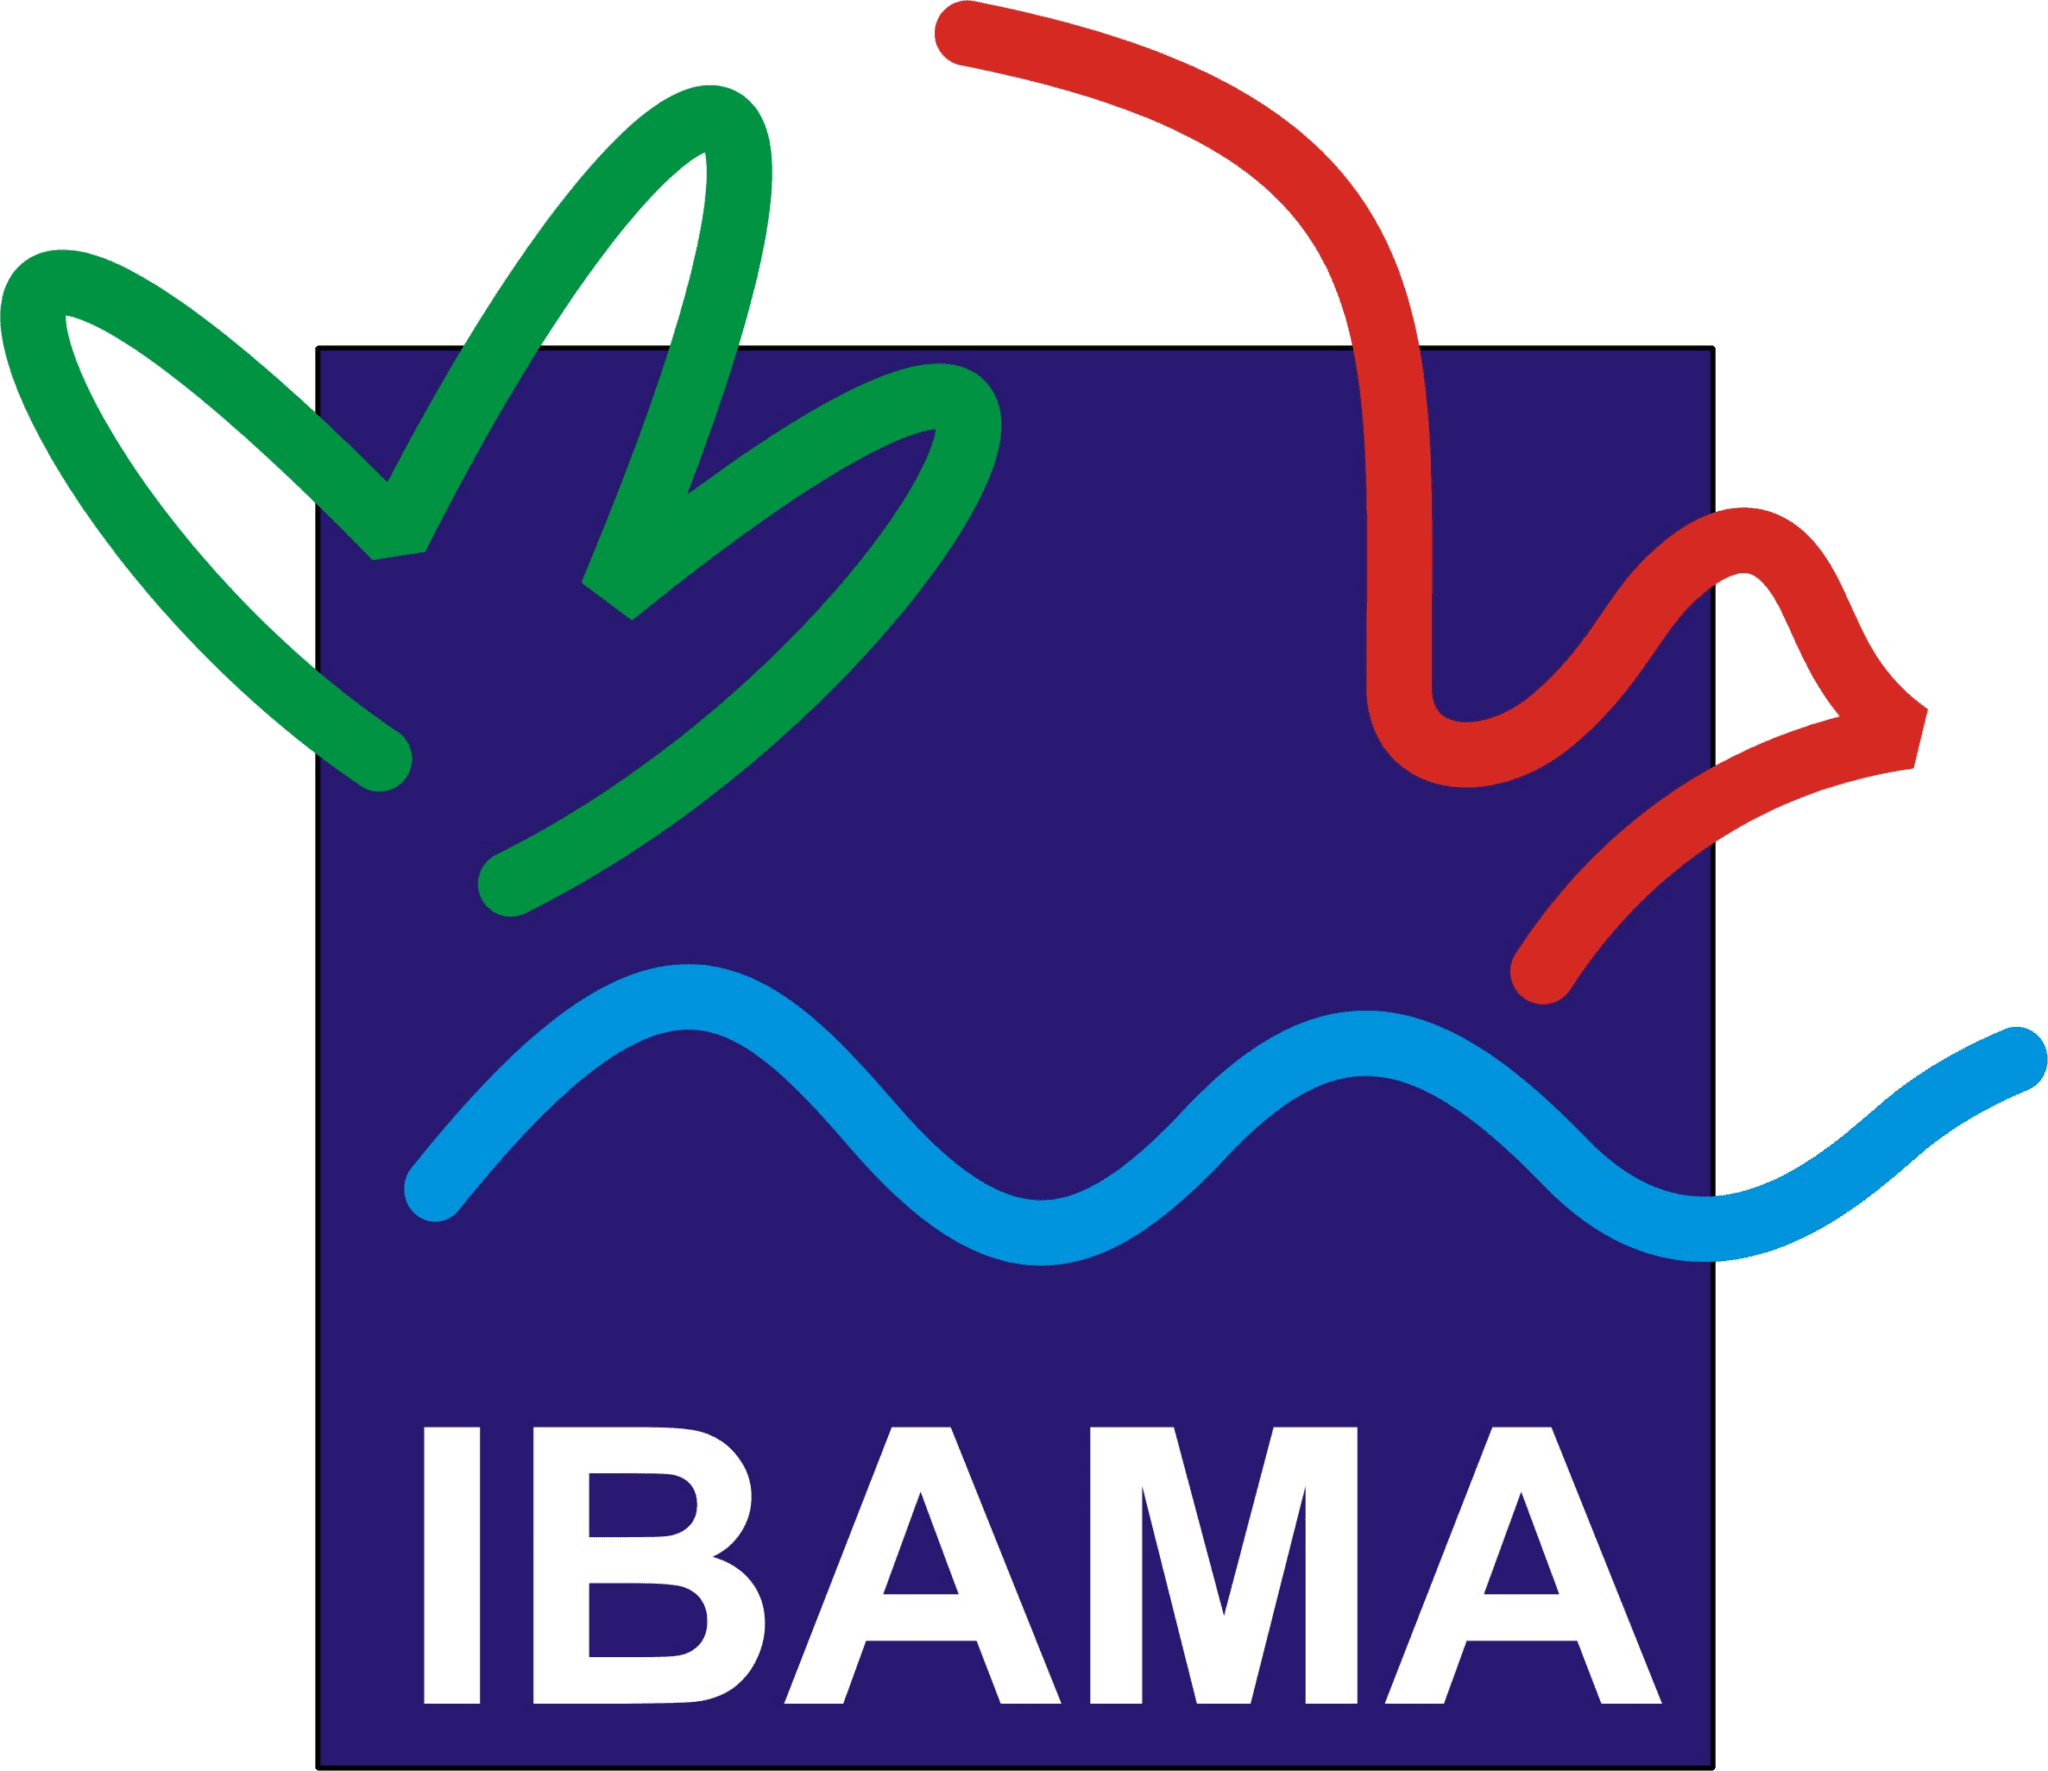 Concurso Ibama: Oferta de 680 vagas e inicial de R$ 7.675,45! Prepare-se com antecedência e saia na frente!